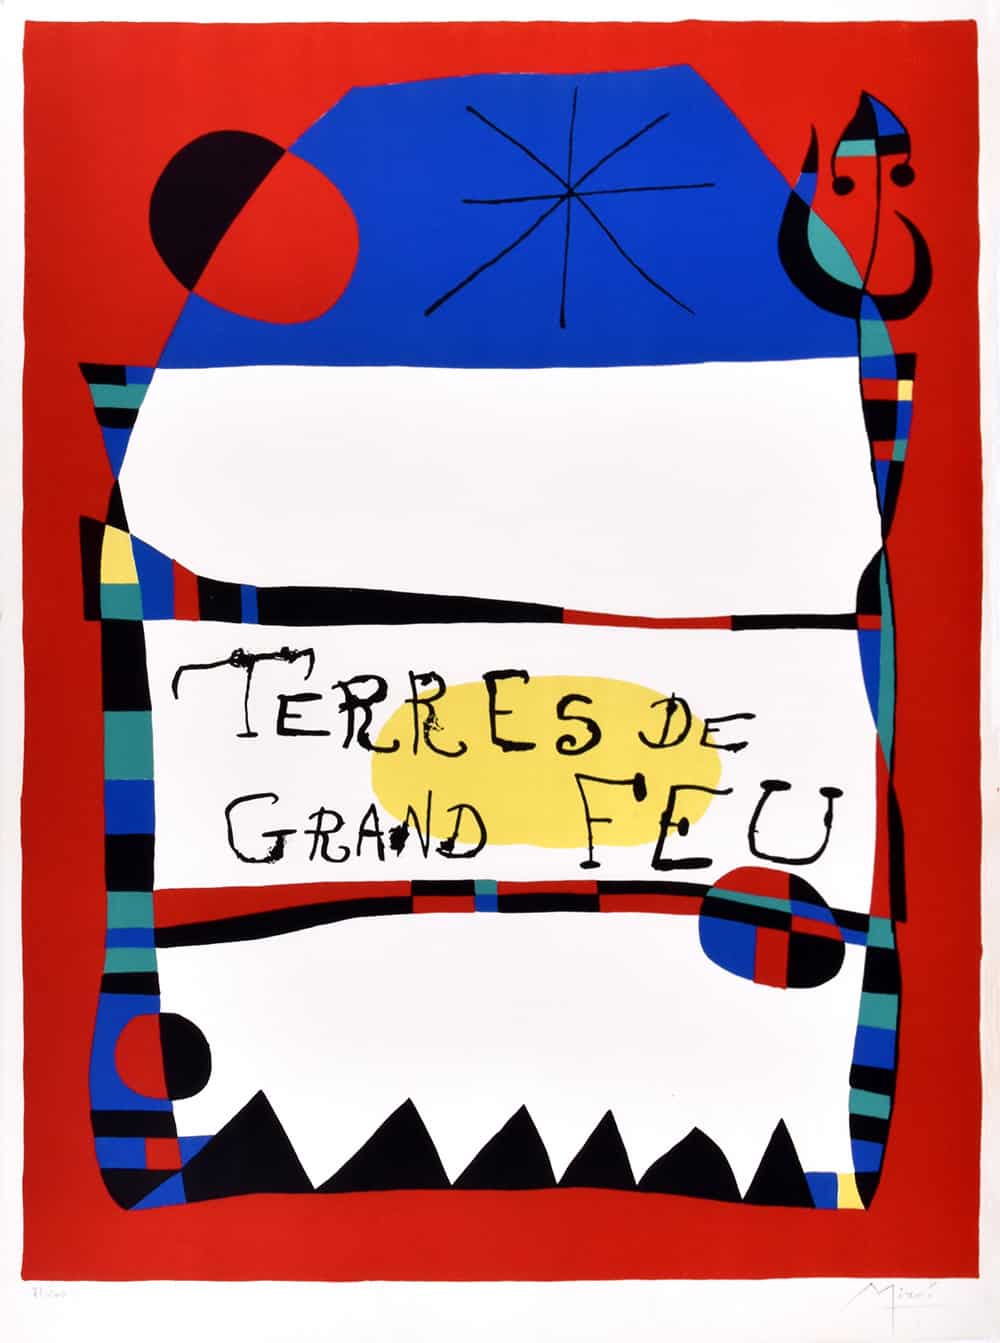 Joan Miró, Terres de grand feu, 1956